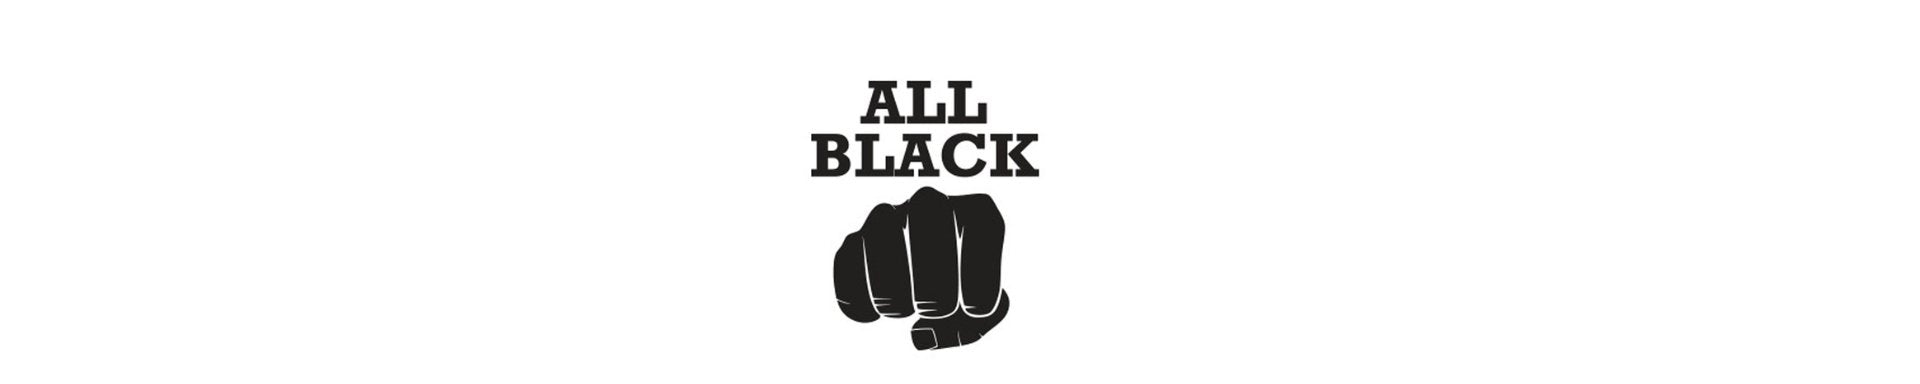 ALL BLACK - Oh My God'Z